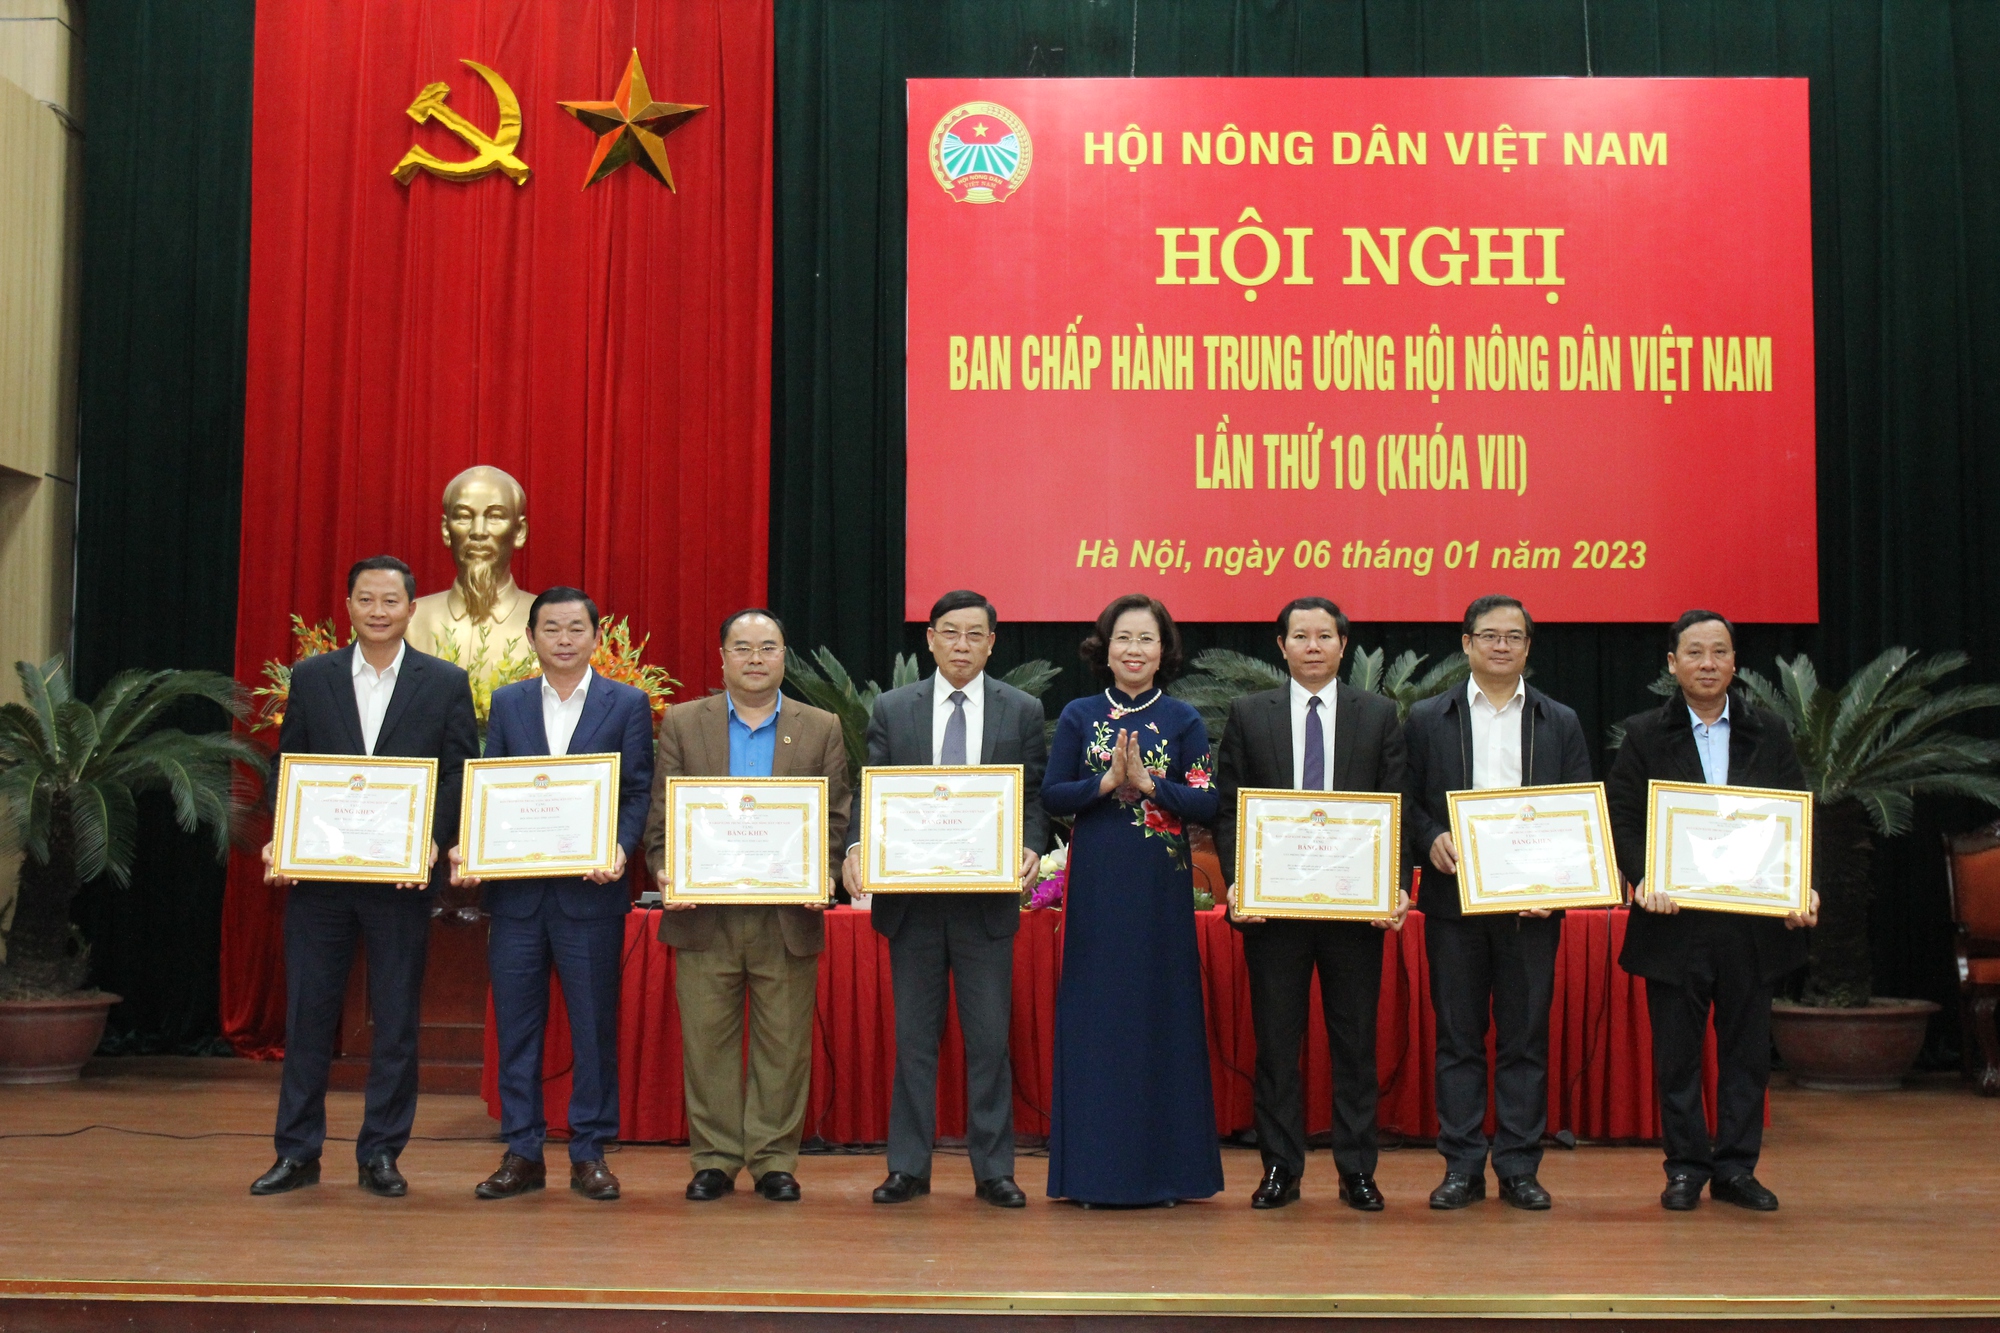 Trung ương Hội NDVN khen thưởng Hội Nông dân các tỉnh, thành phố có thành tích xuất sắc trong năm 2022  - Ảnh 4.